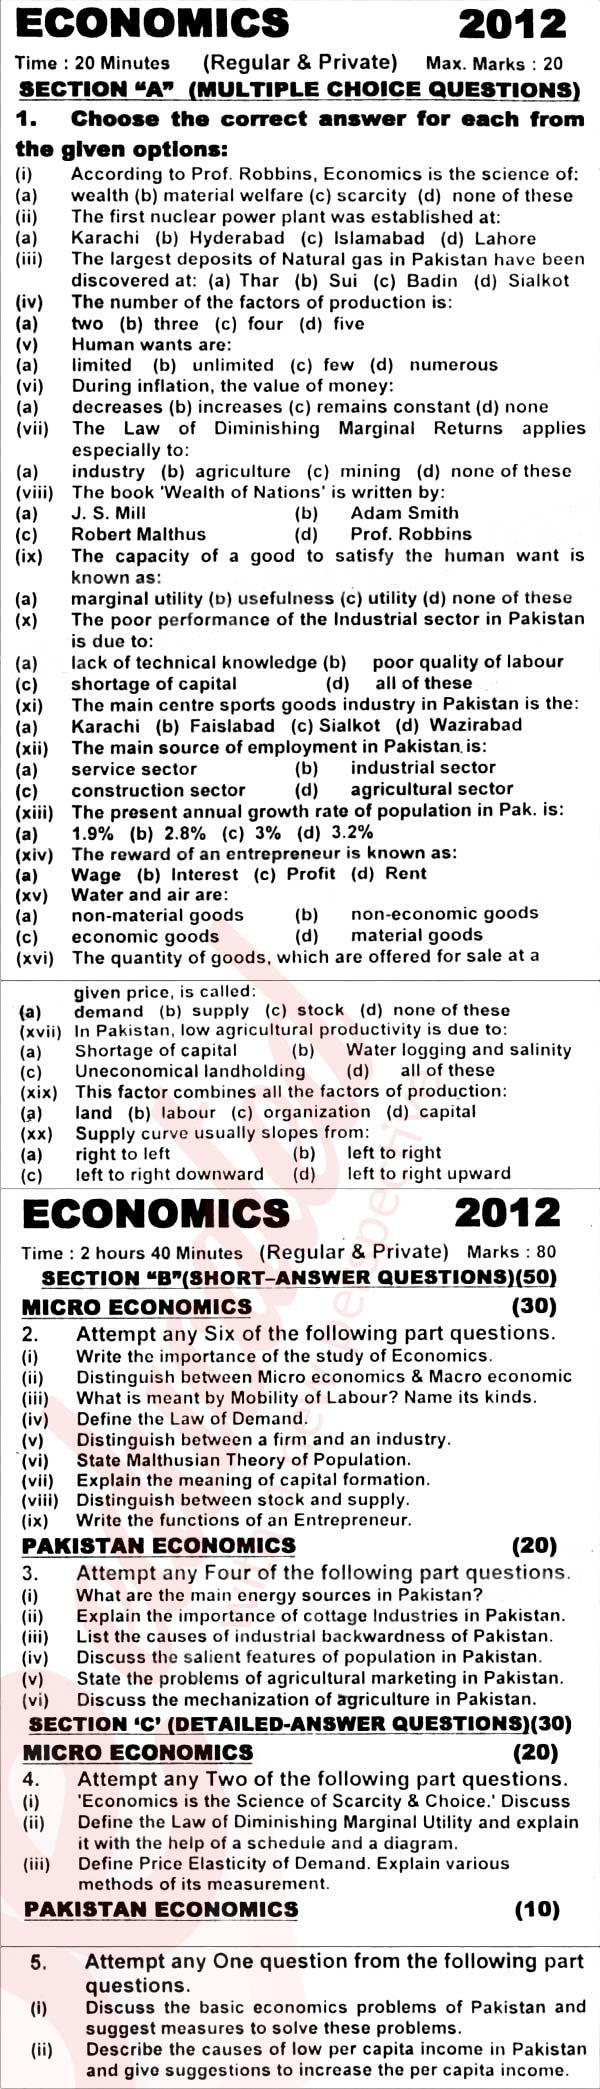 Economics FA Part 1 Past Paper Group 1 KPBTE 2012